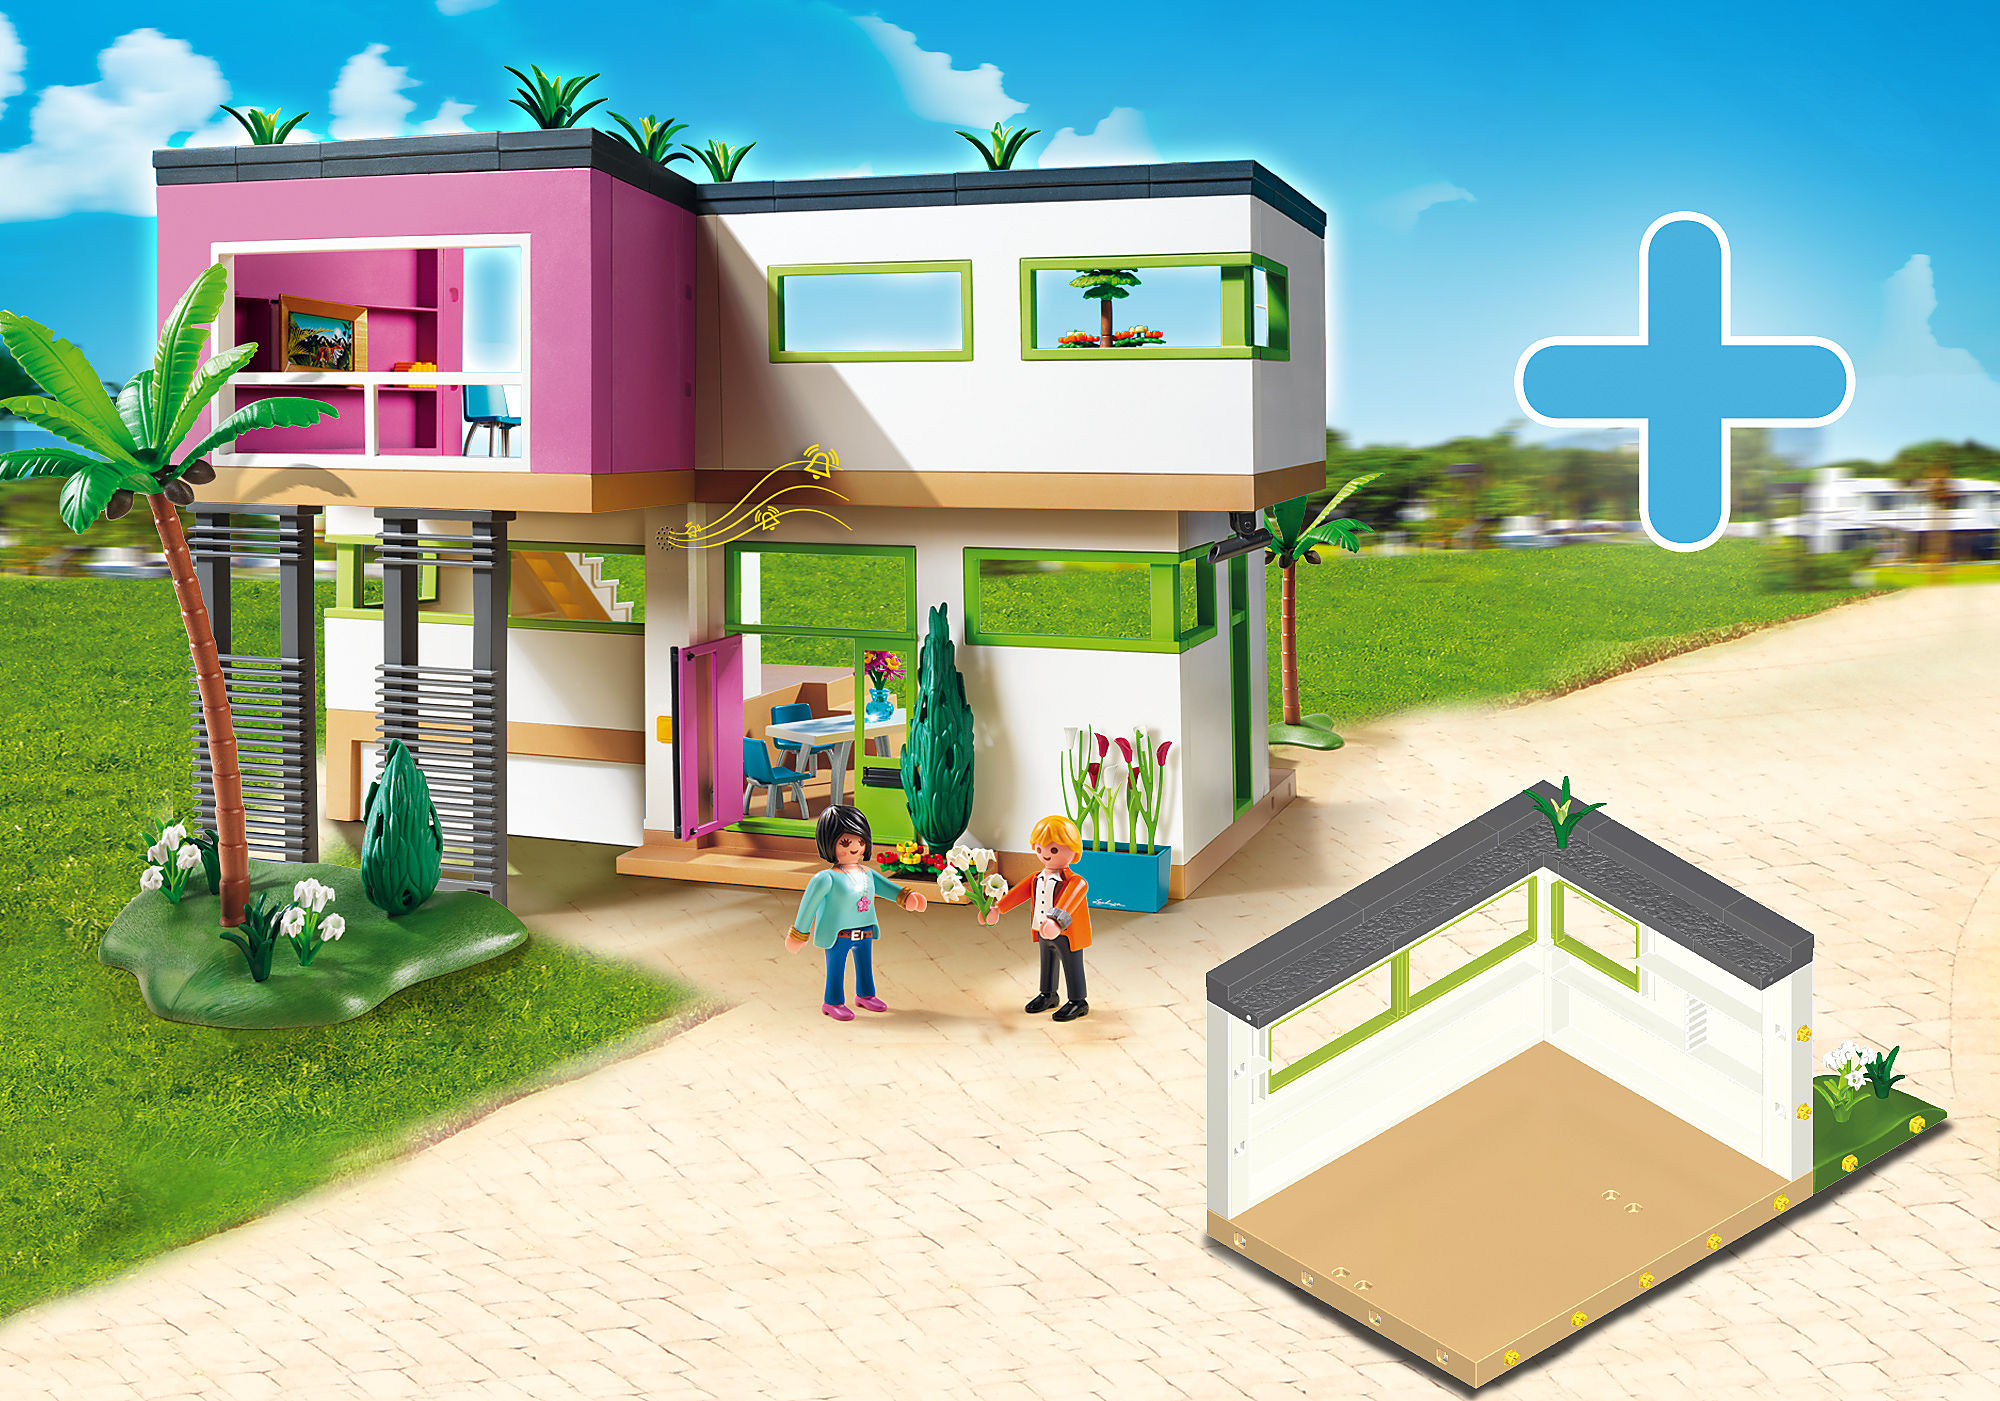 Maison de famille transportable - playmobil 4145 > idées enfants